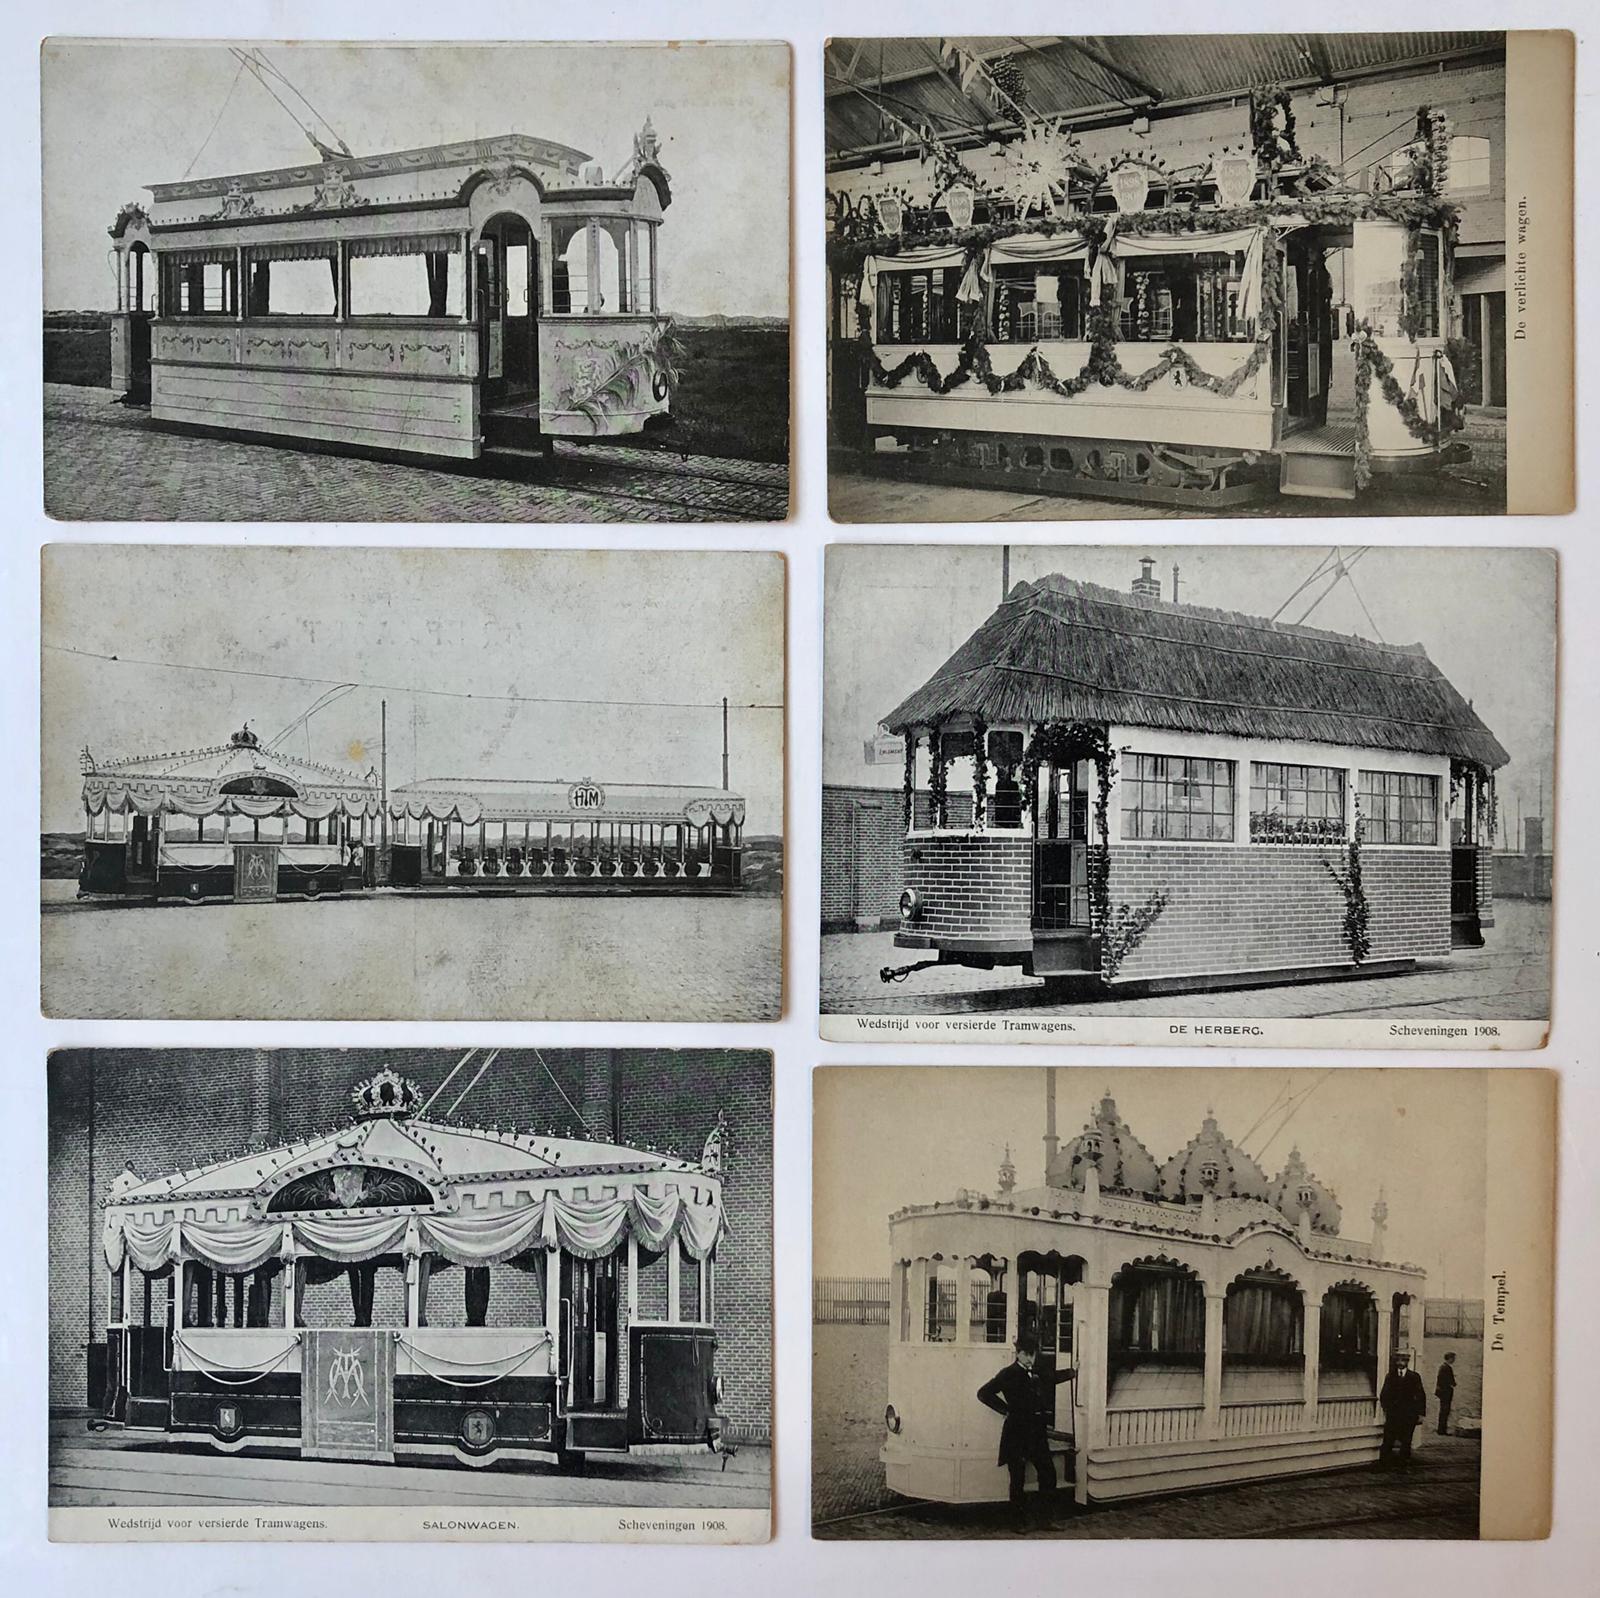  - [Postcards Transport The Hague] TRAMS, SCHEVENINGEN Zes prentbriefkaarten uit 1908 met afbeeldingen van versierde tramwagens die deelnamen aan een wedstrijd te Scheveningen in dat jaar.